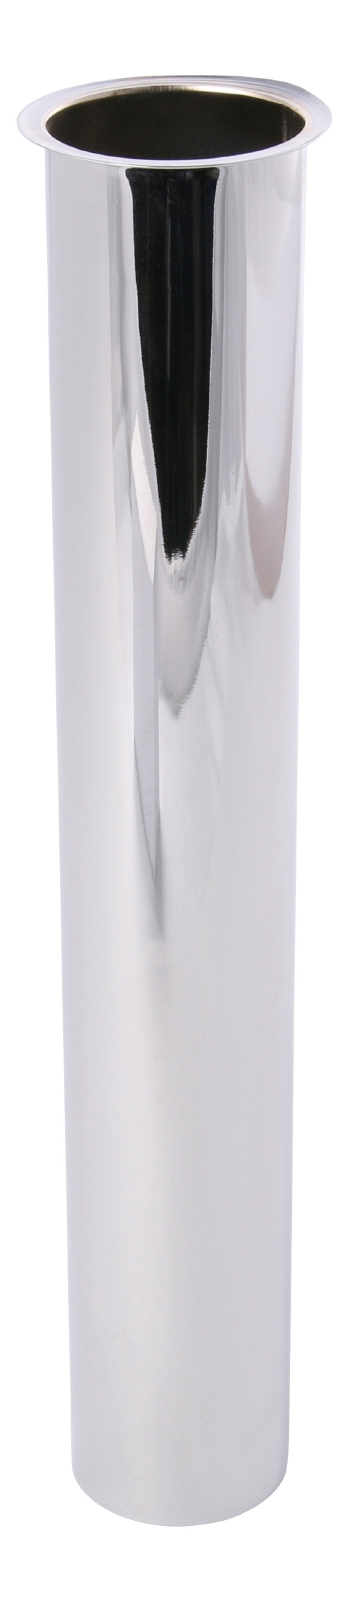 Sanitop-Wingenroth Tauchrohr für Flaschengeruchsverschluss in Ø 32 x 200 mm, aus verchromtem Metall